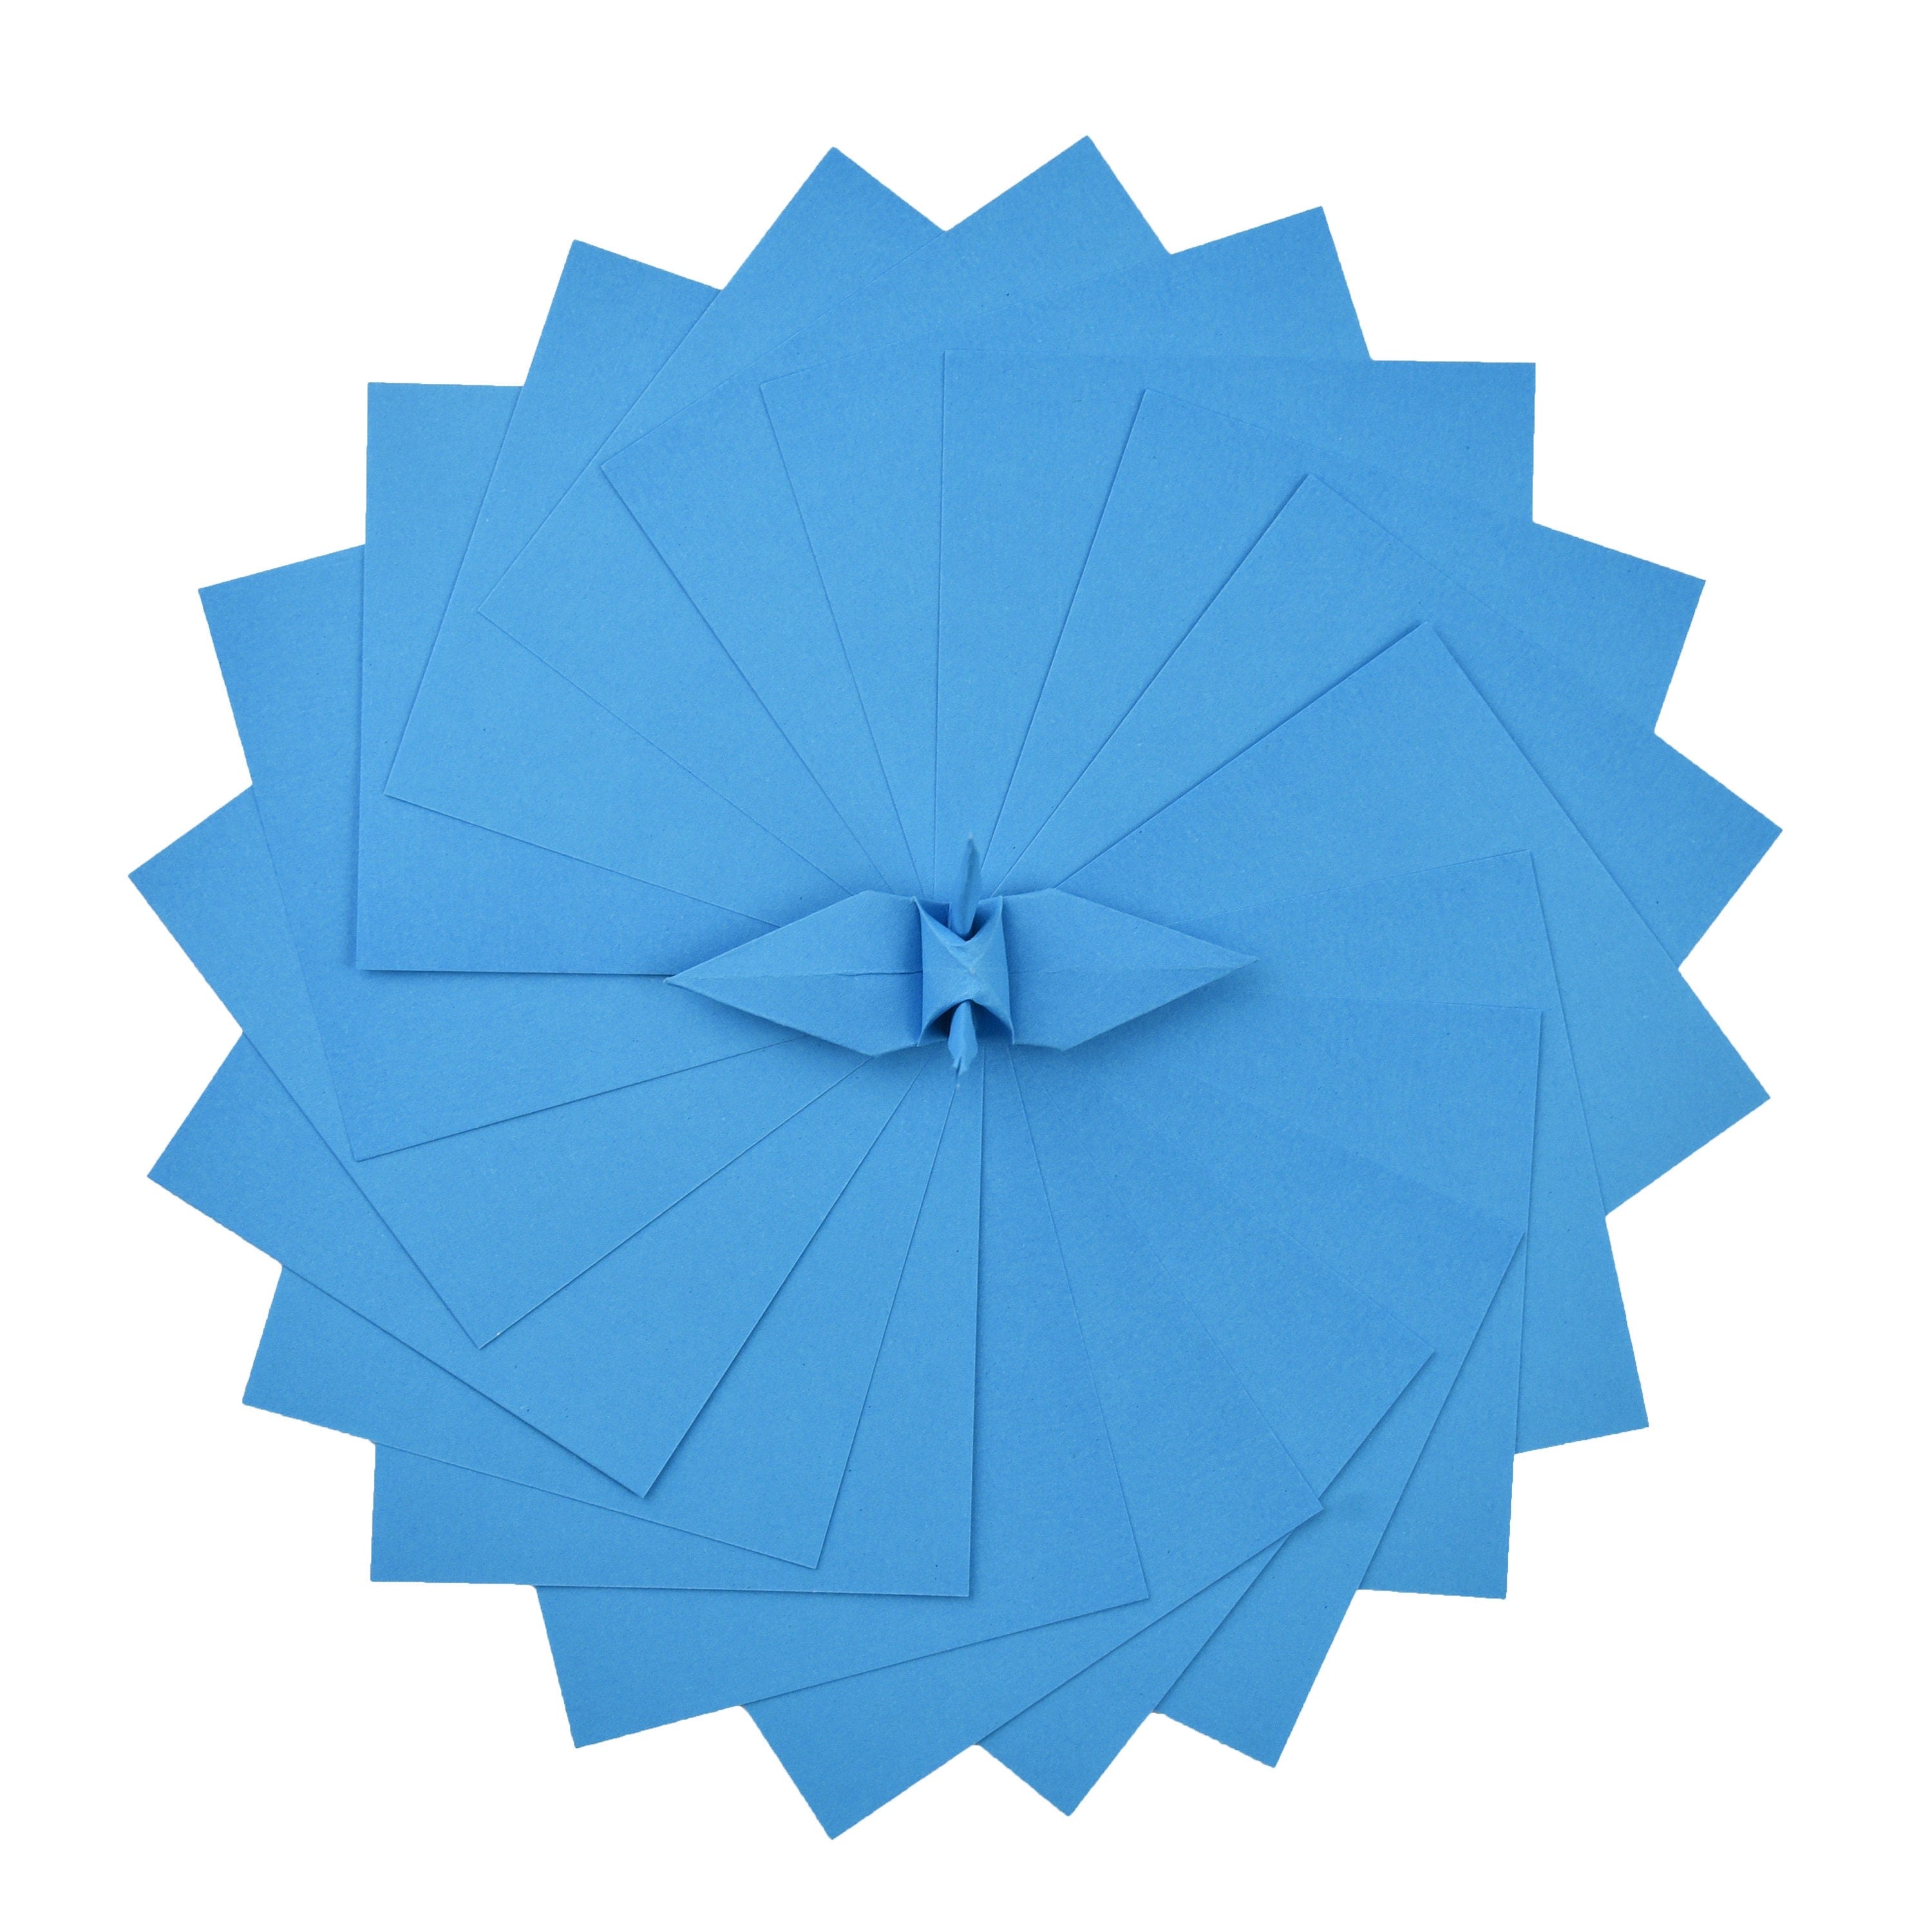 100 Hojas de Papel Origami - 3x3 pulgadas - Paquete de Papel Cuadrado para Plegar, Grullas de Origami y Decoración - S18